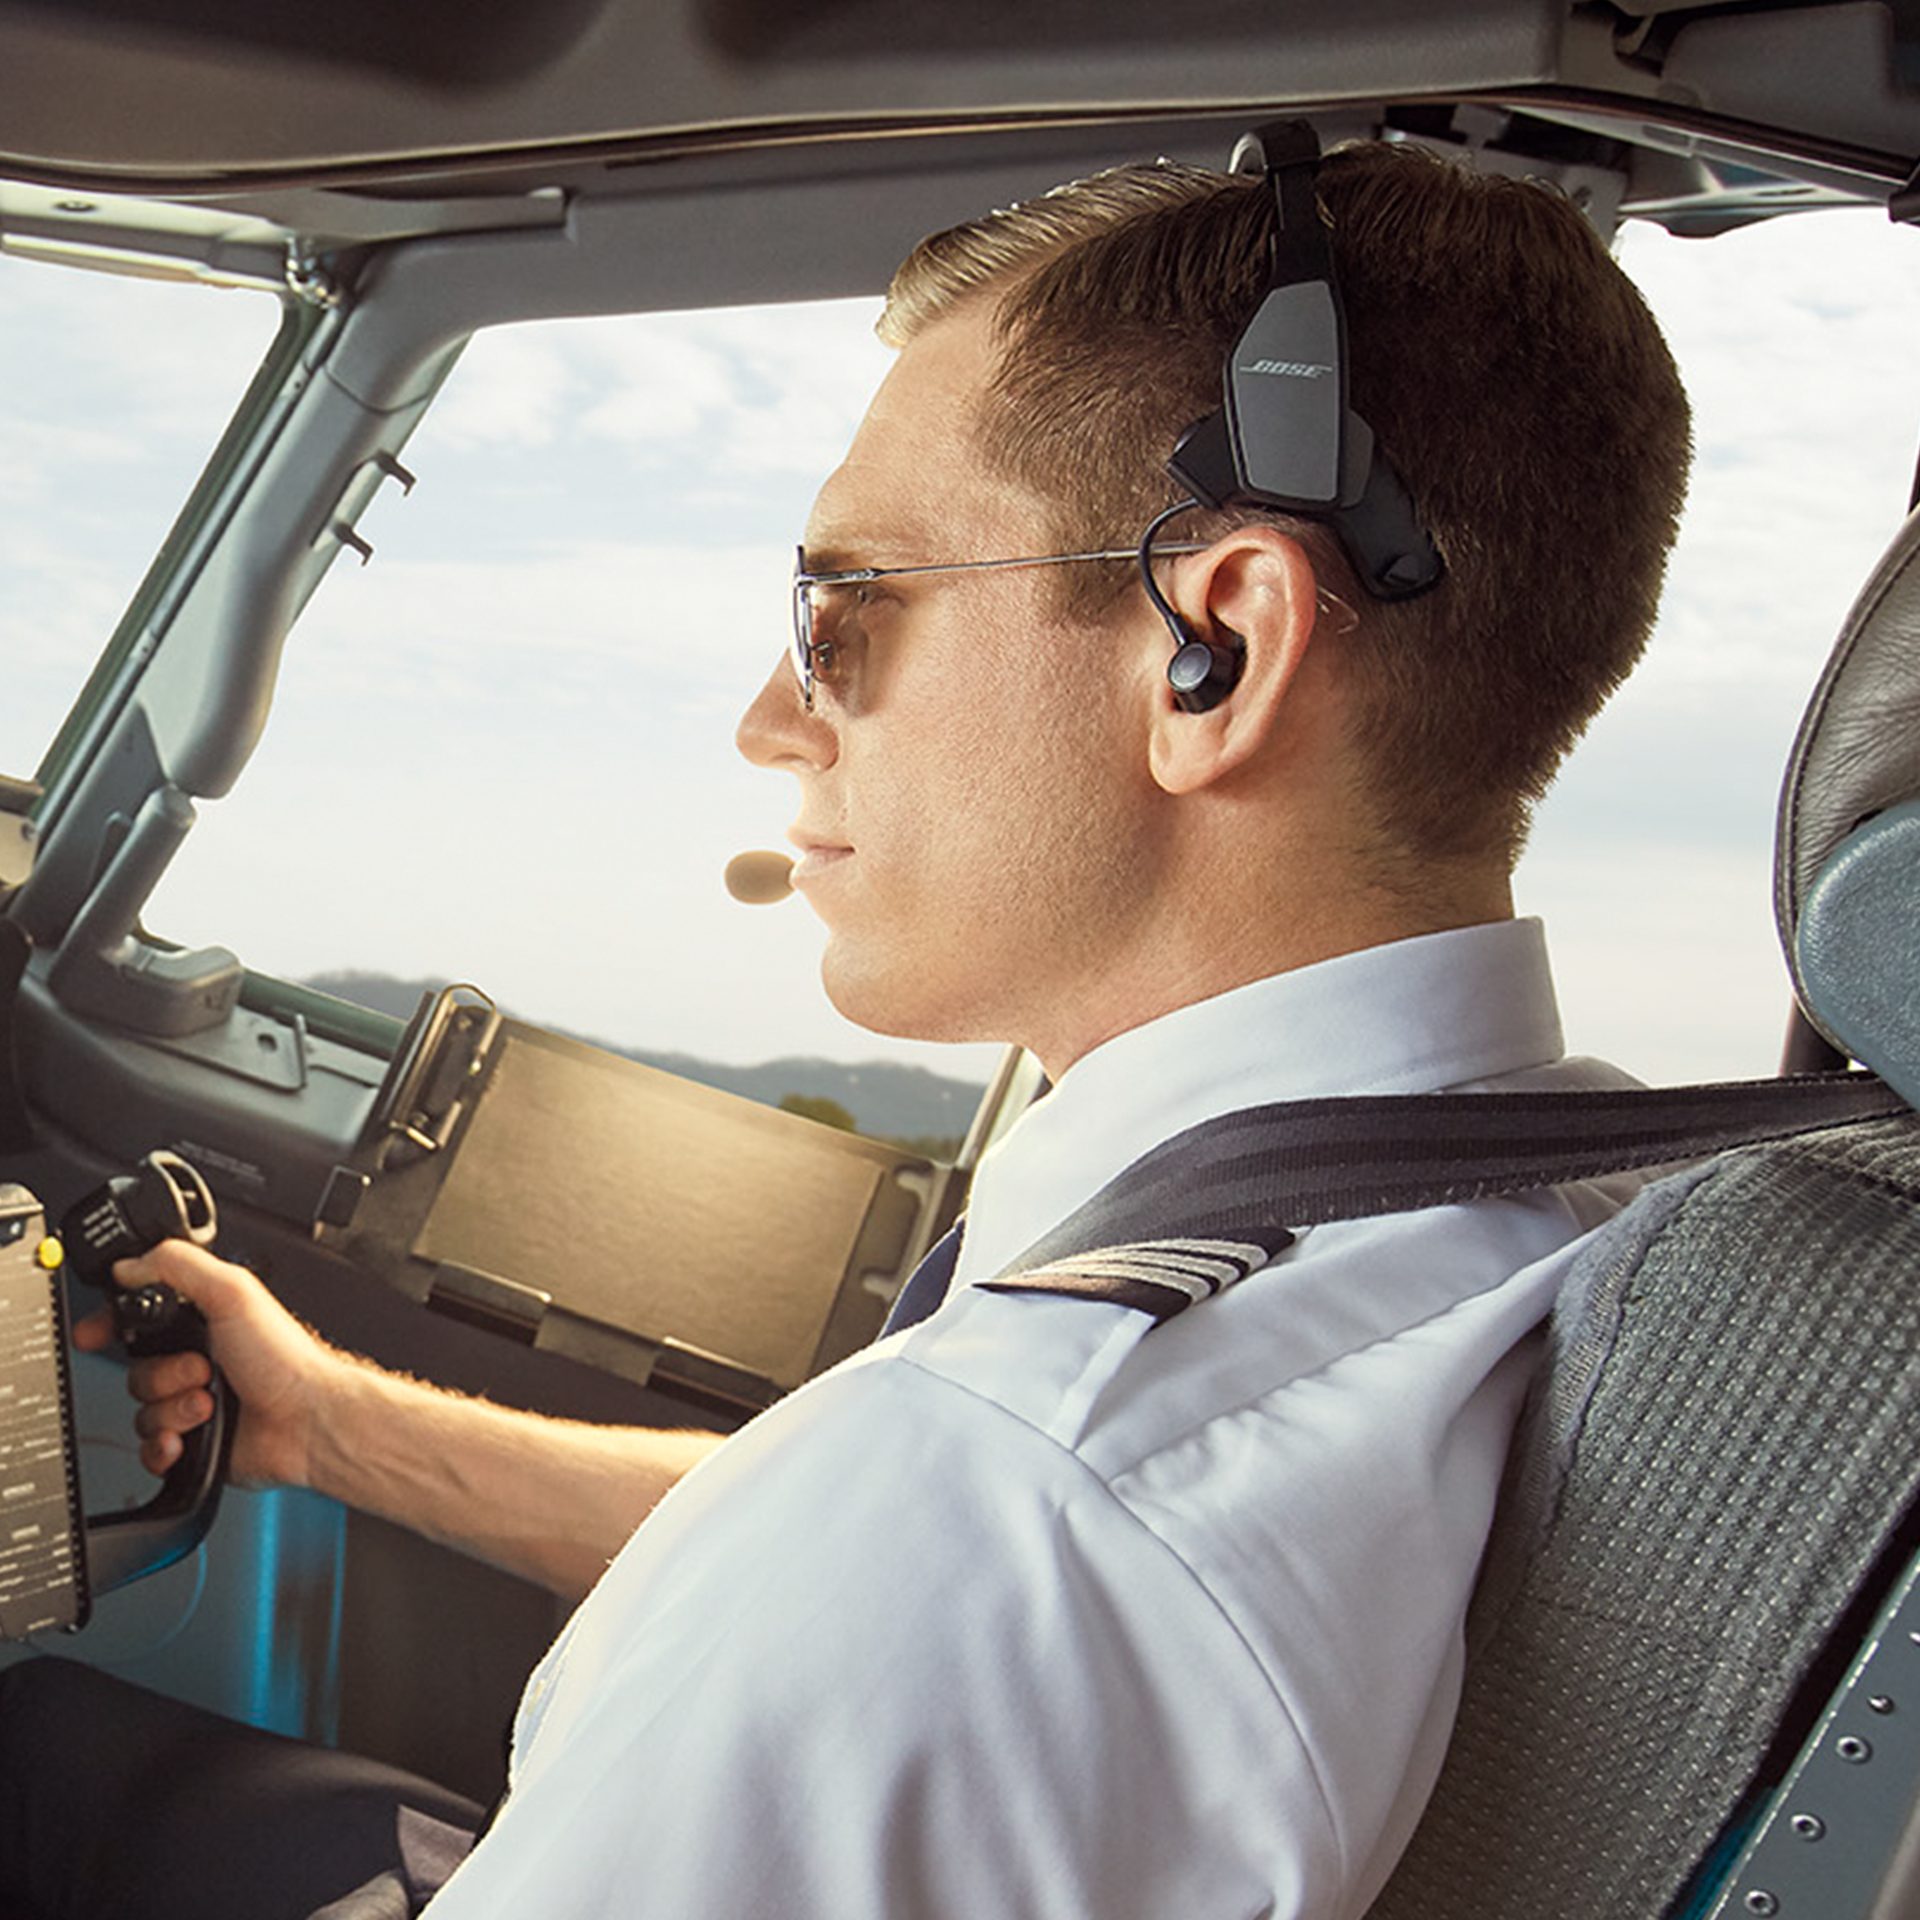 bose aviation headset repair